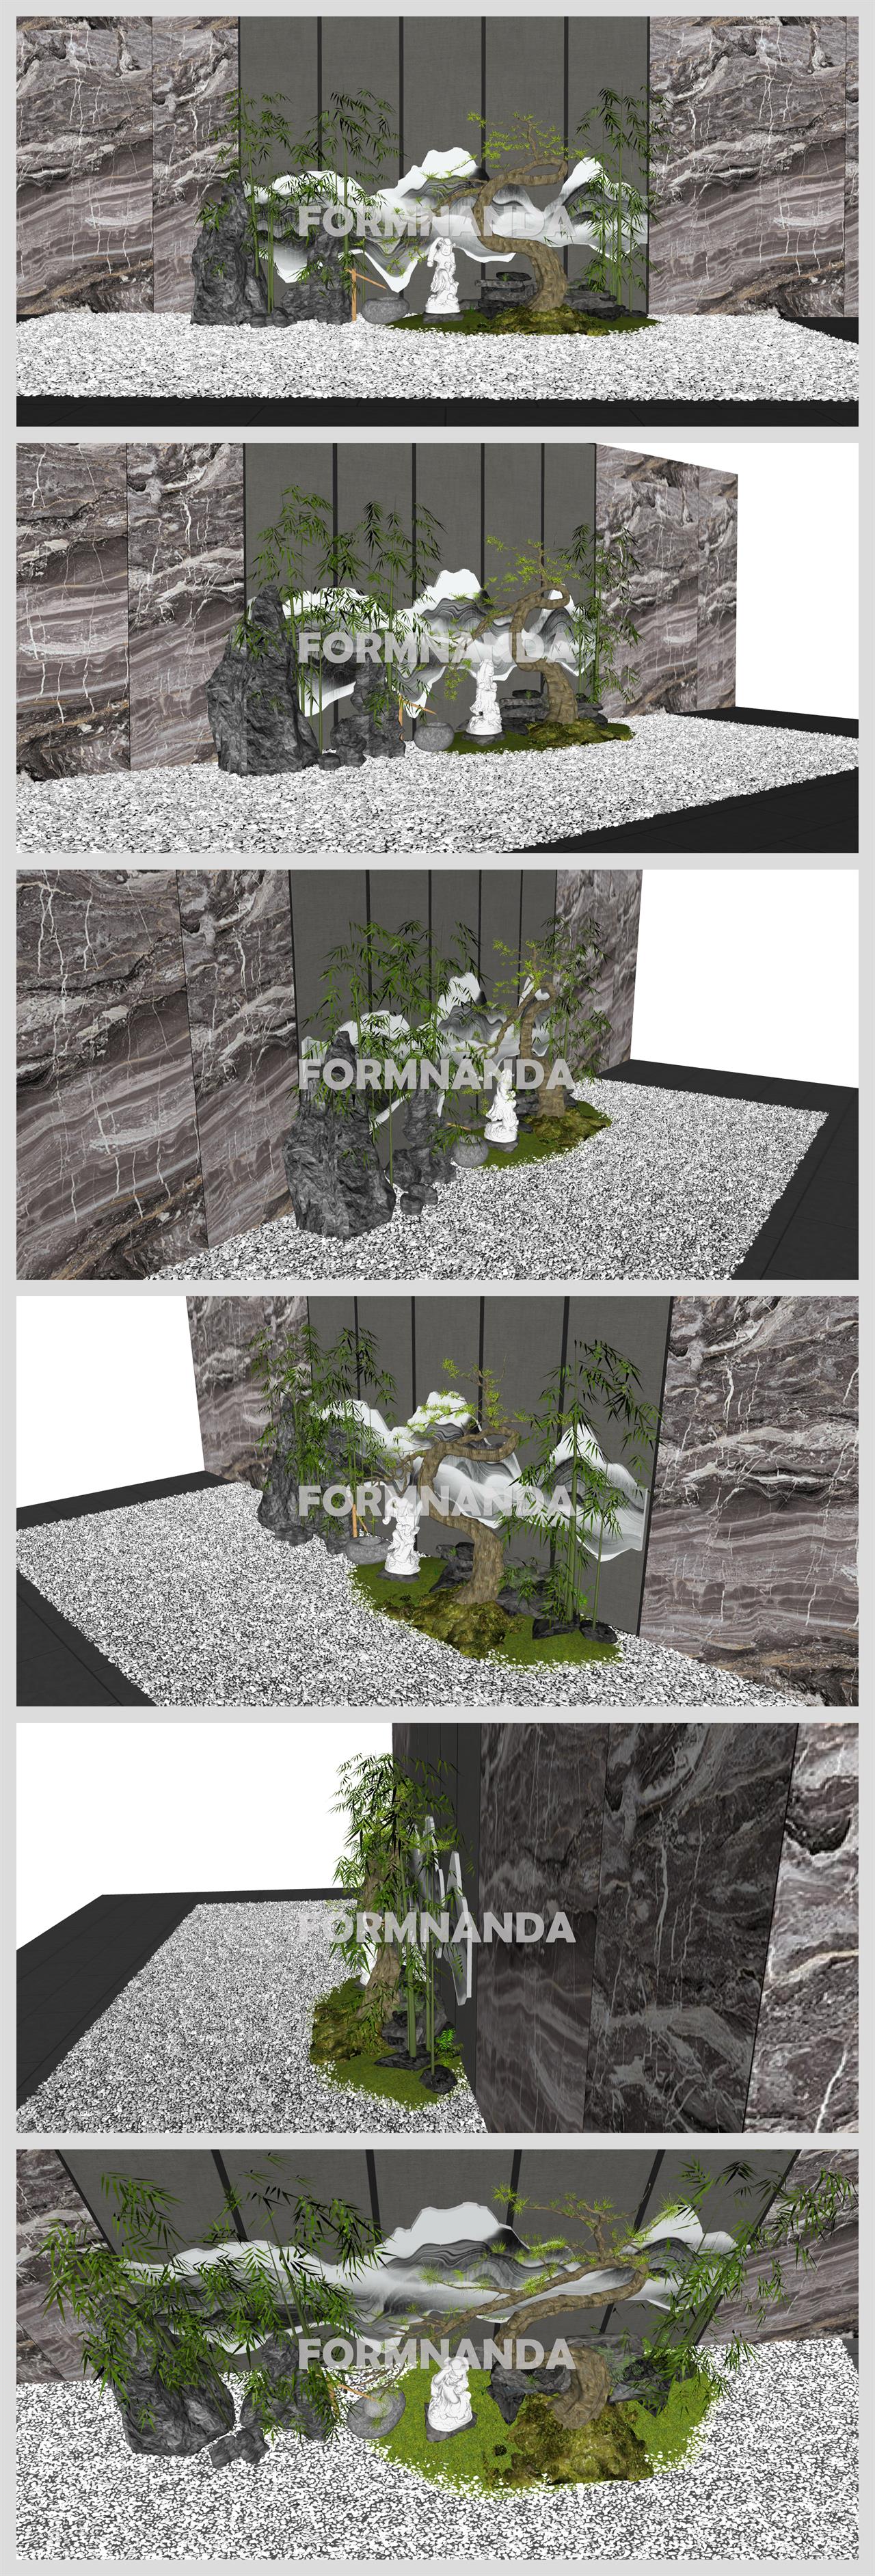 현대적인 정원조경 디자인 웹툰배경 배경 사이트 상세보기